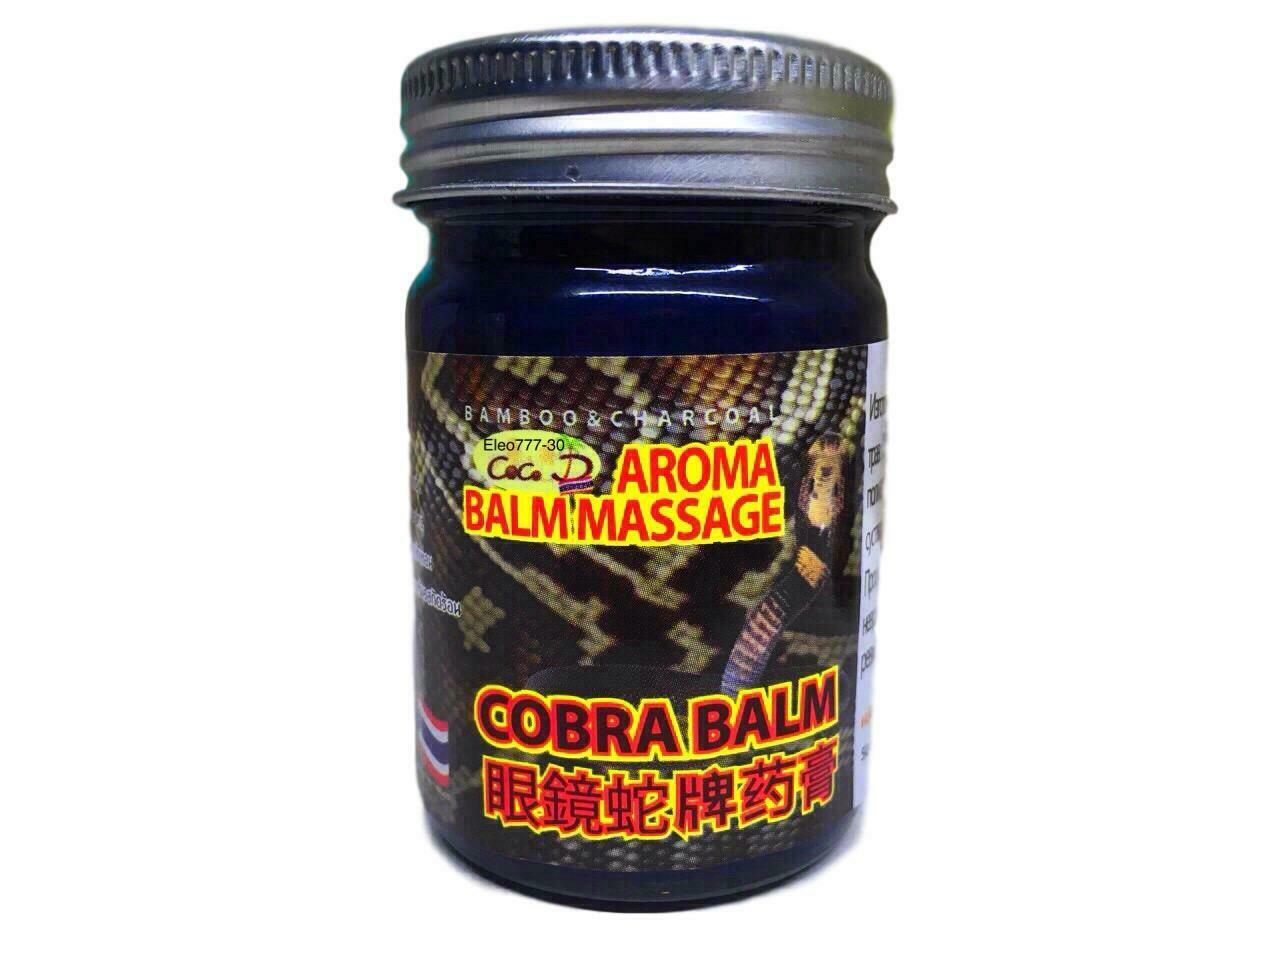 Aroma Balm Massage Cobra Balm